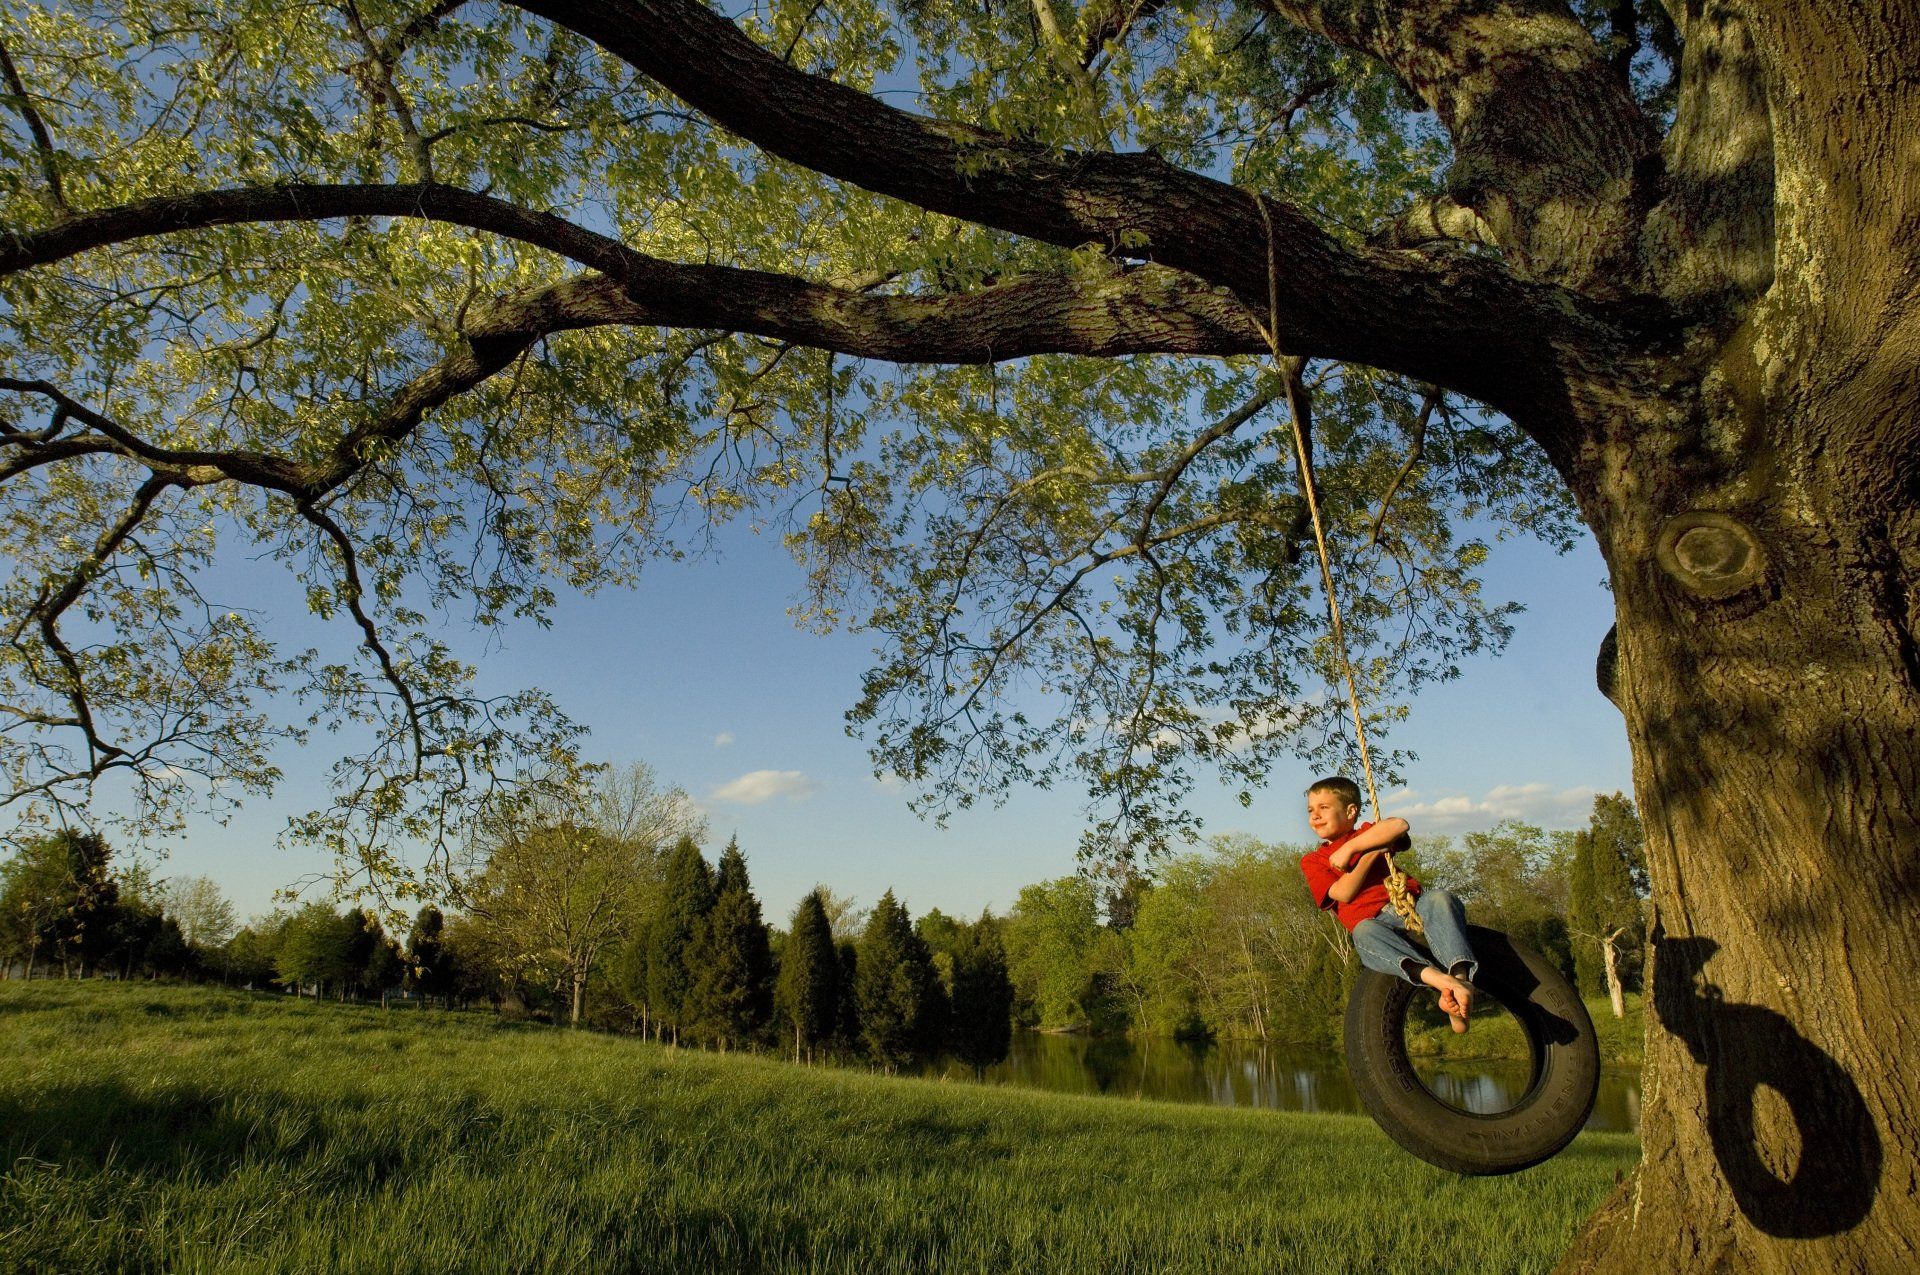 A boy swings on a tire beneath a large oak tree